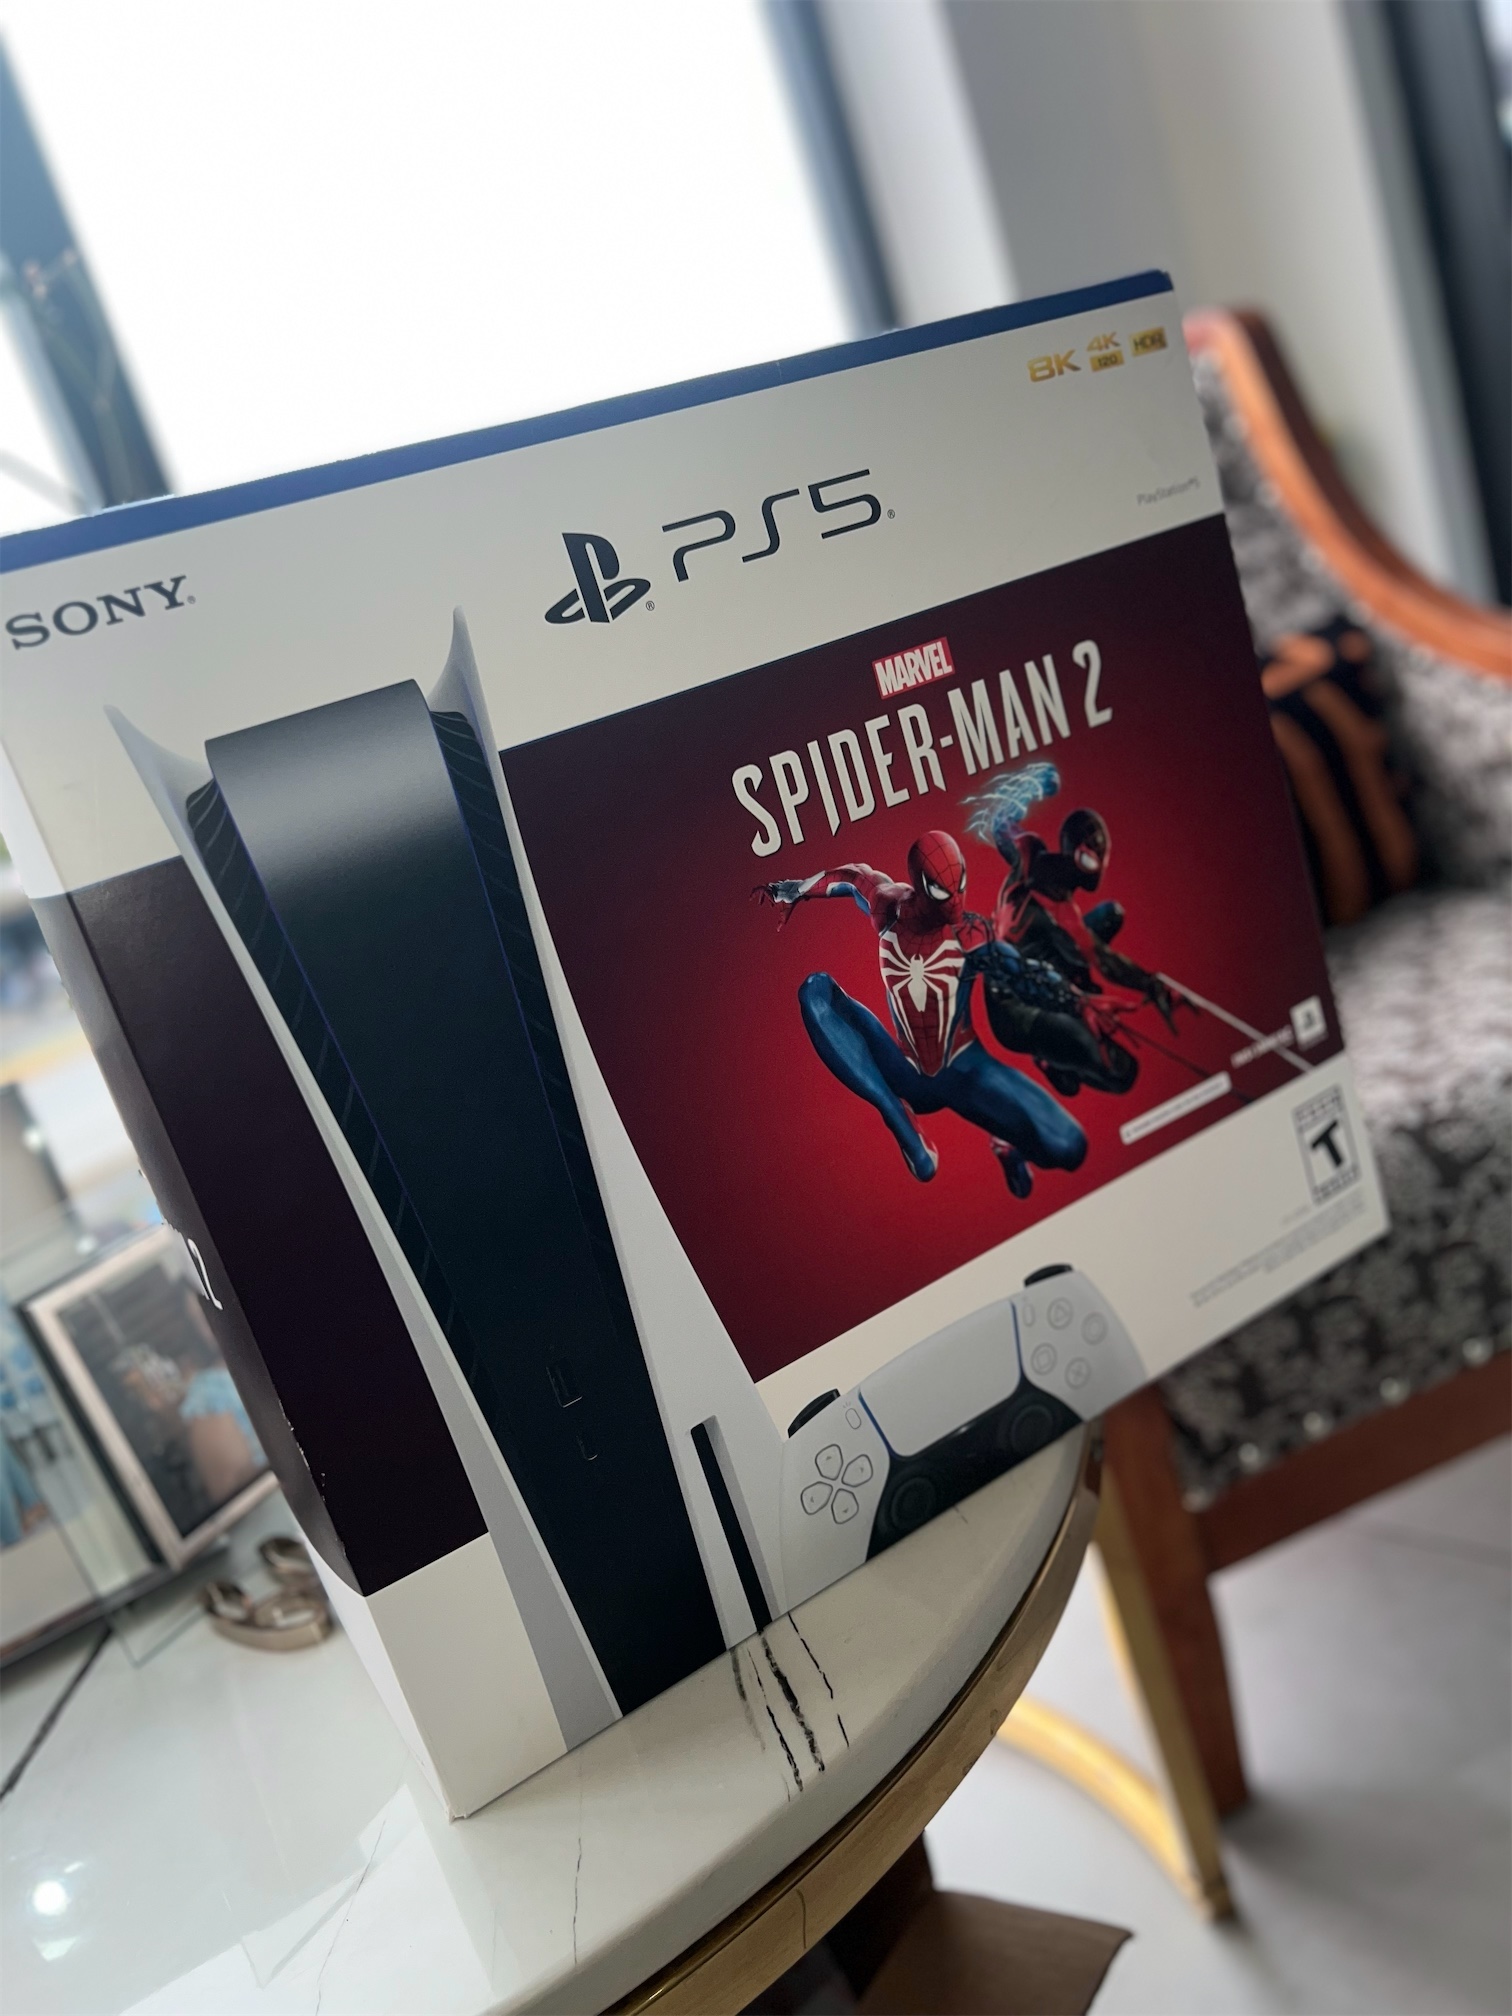 consolas y videojuegos - PlayStation 5 disco versión Spiderman 2 3